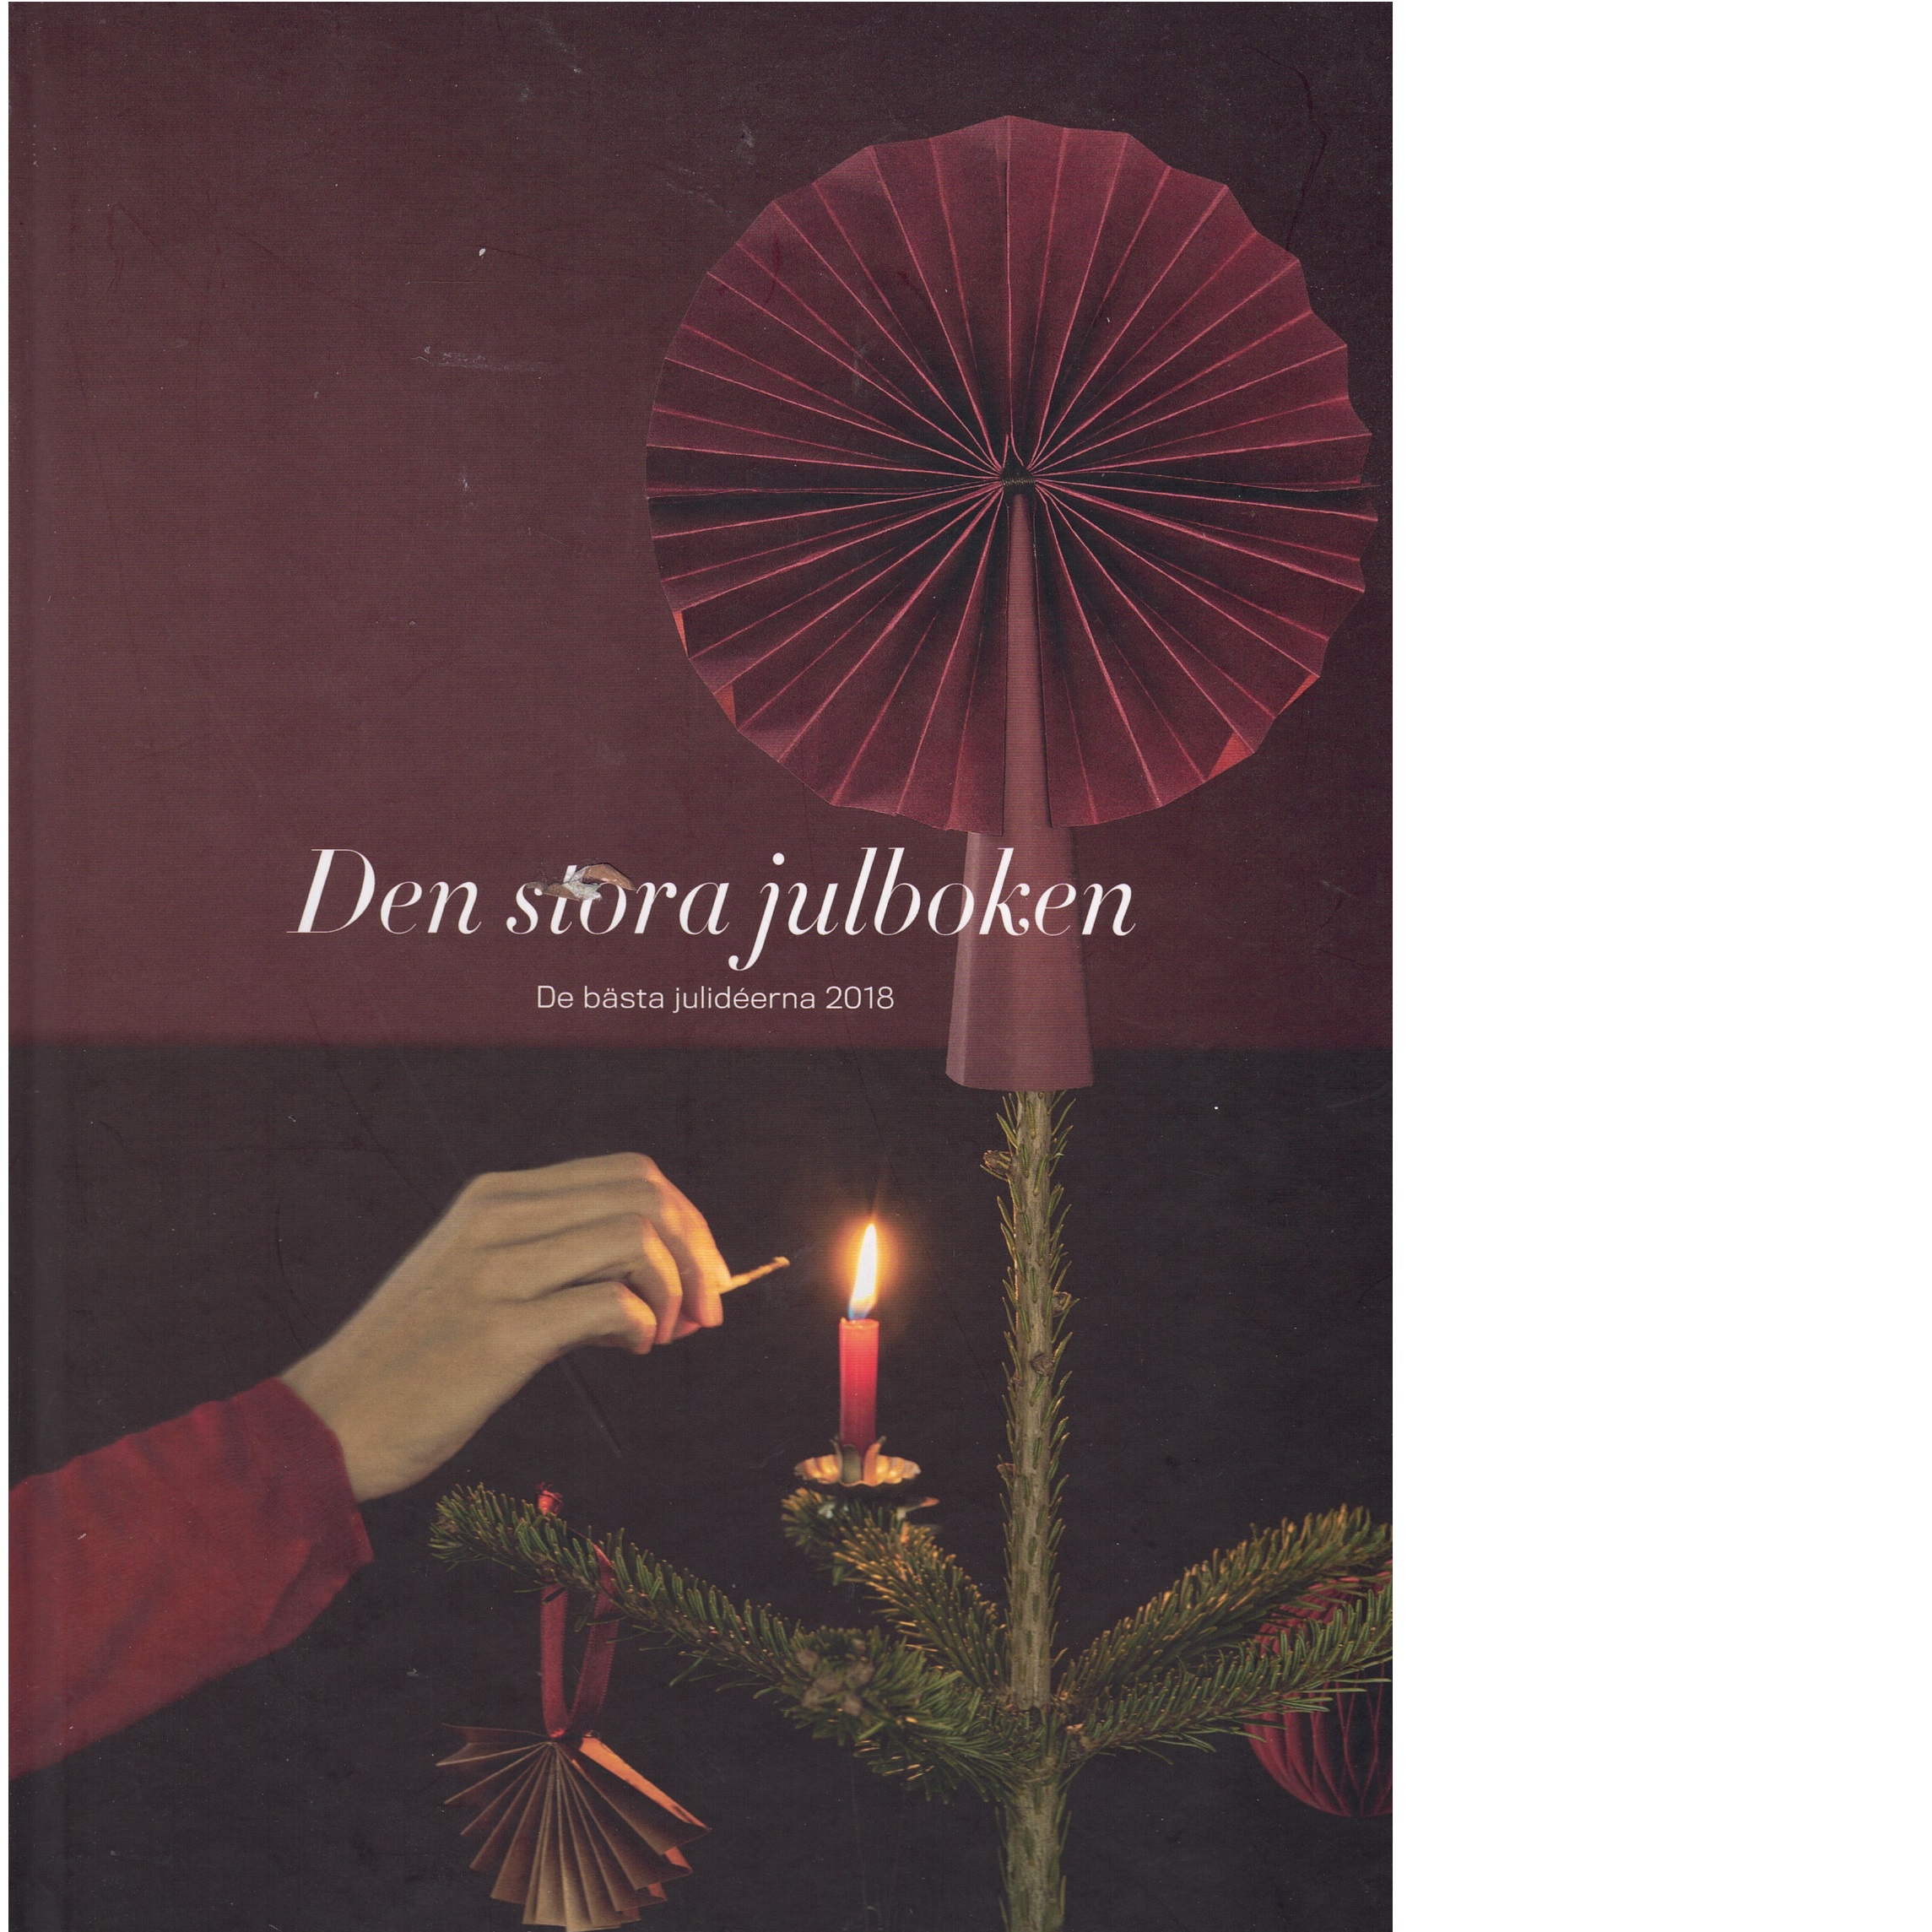 Den stora julboken - De bästa idéerna 2018 - Red.